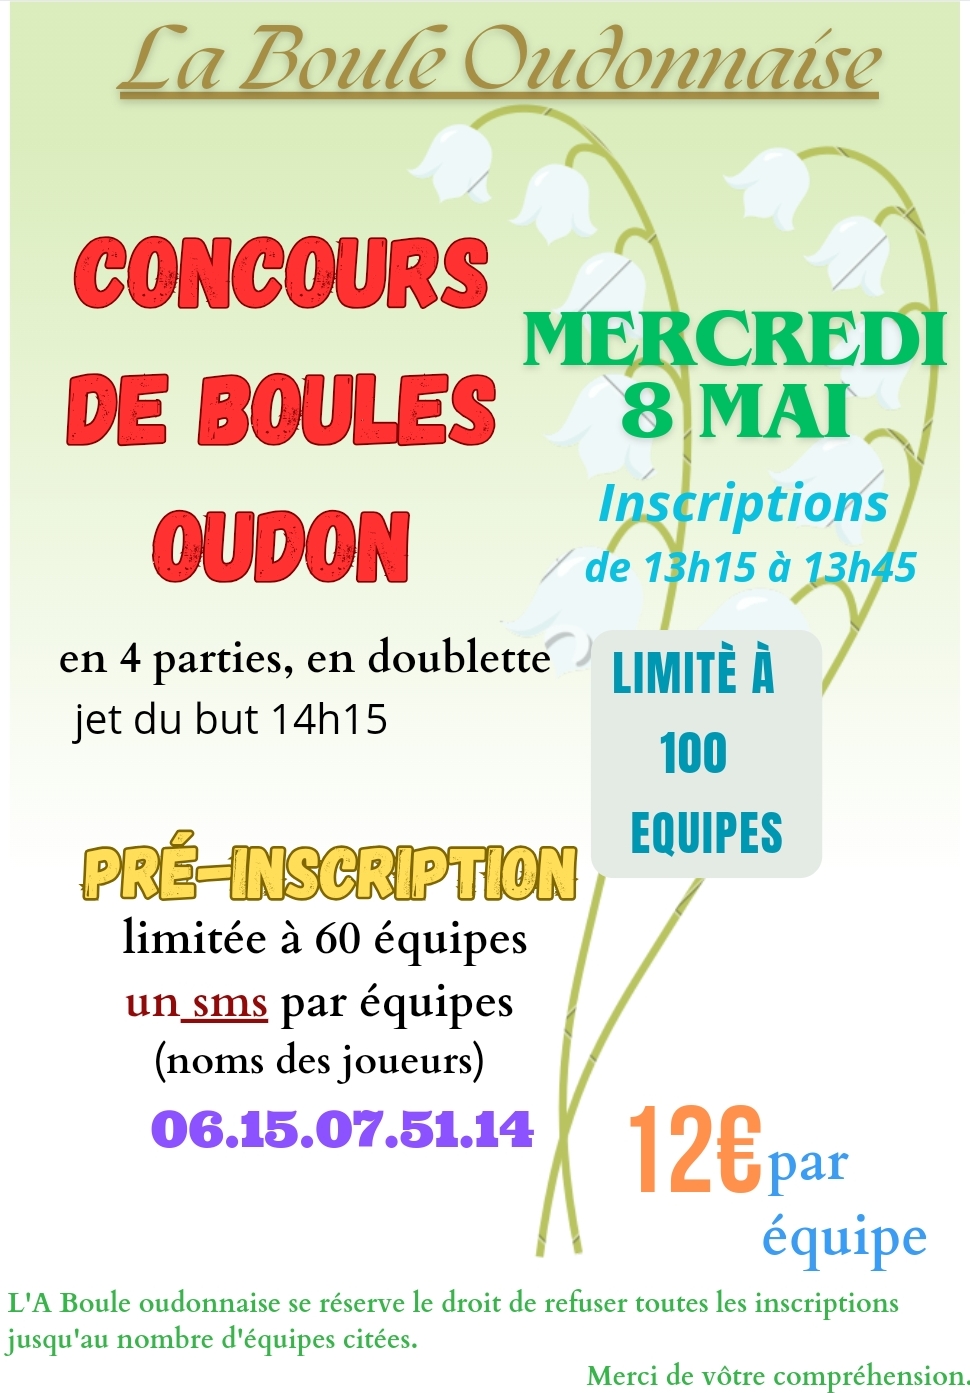 Concours de boules, ouvert à tous. - Evènement du club de pétanque Assiociation La Boule Oudonnaise